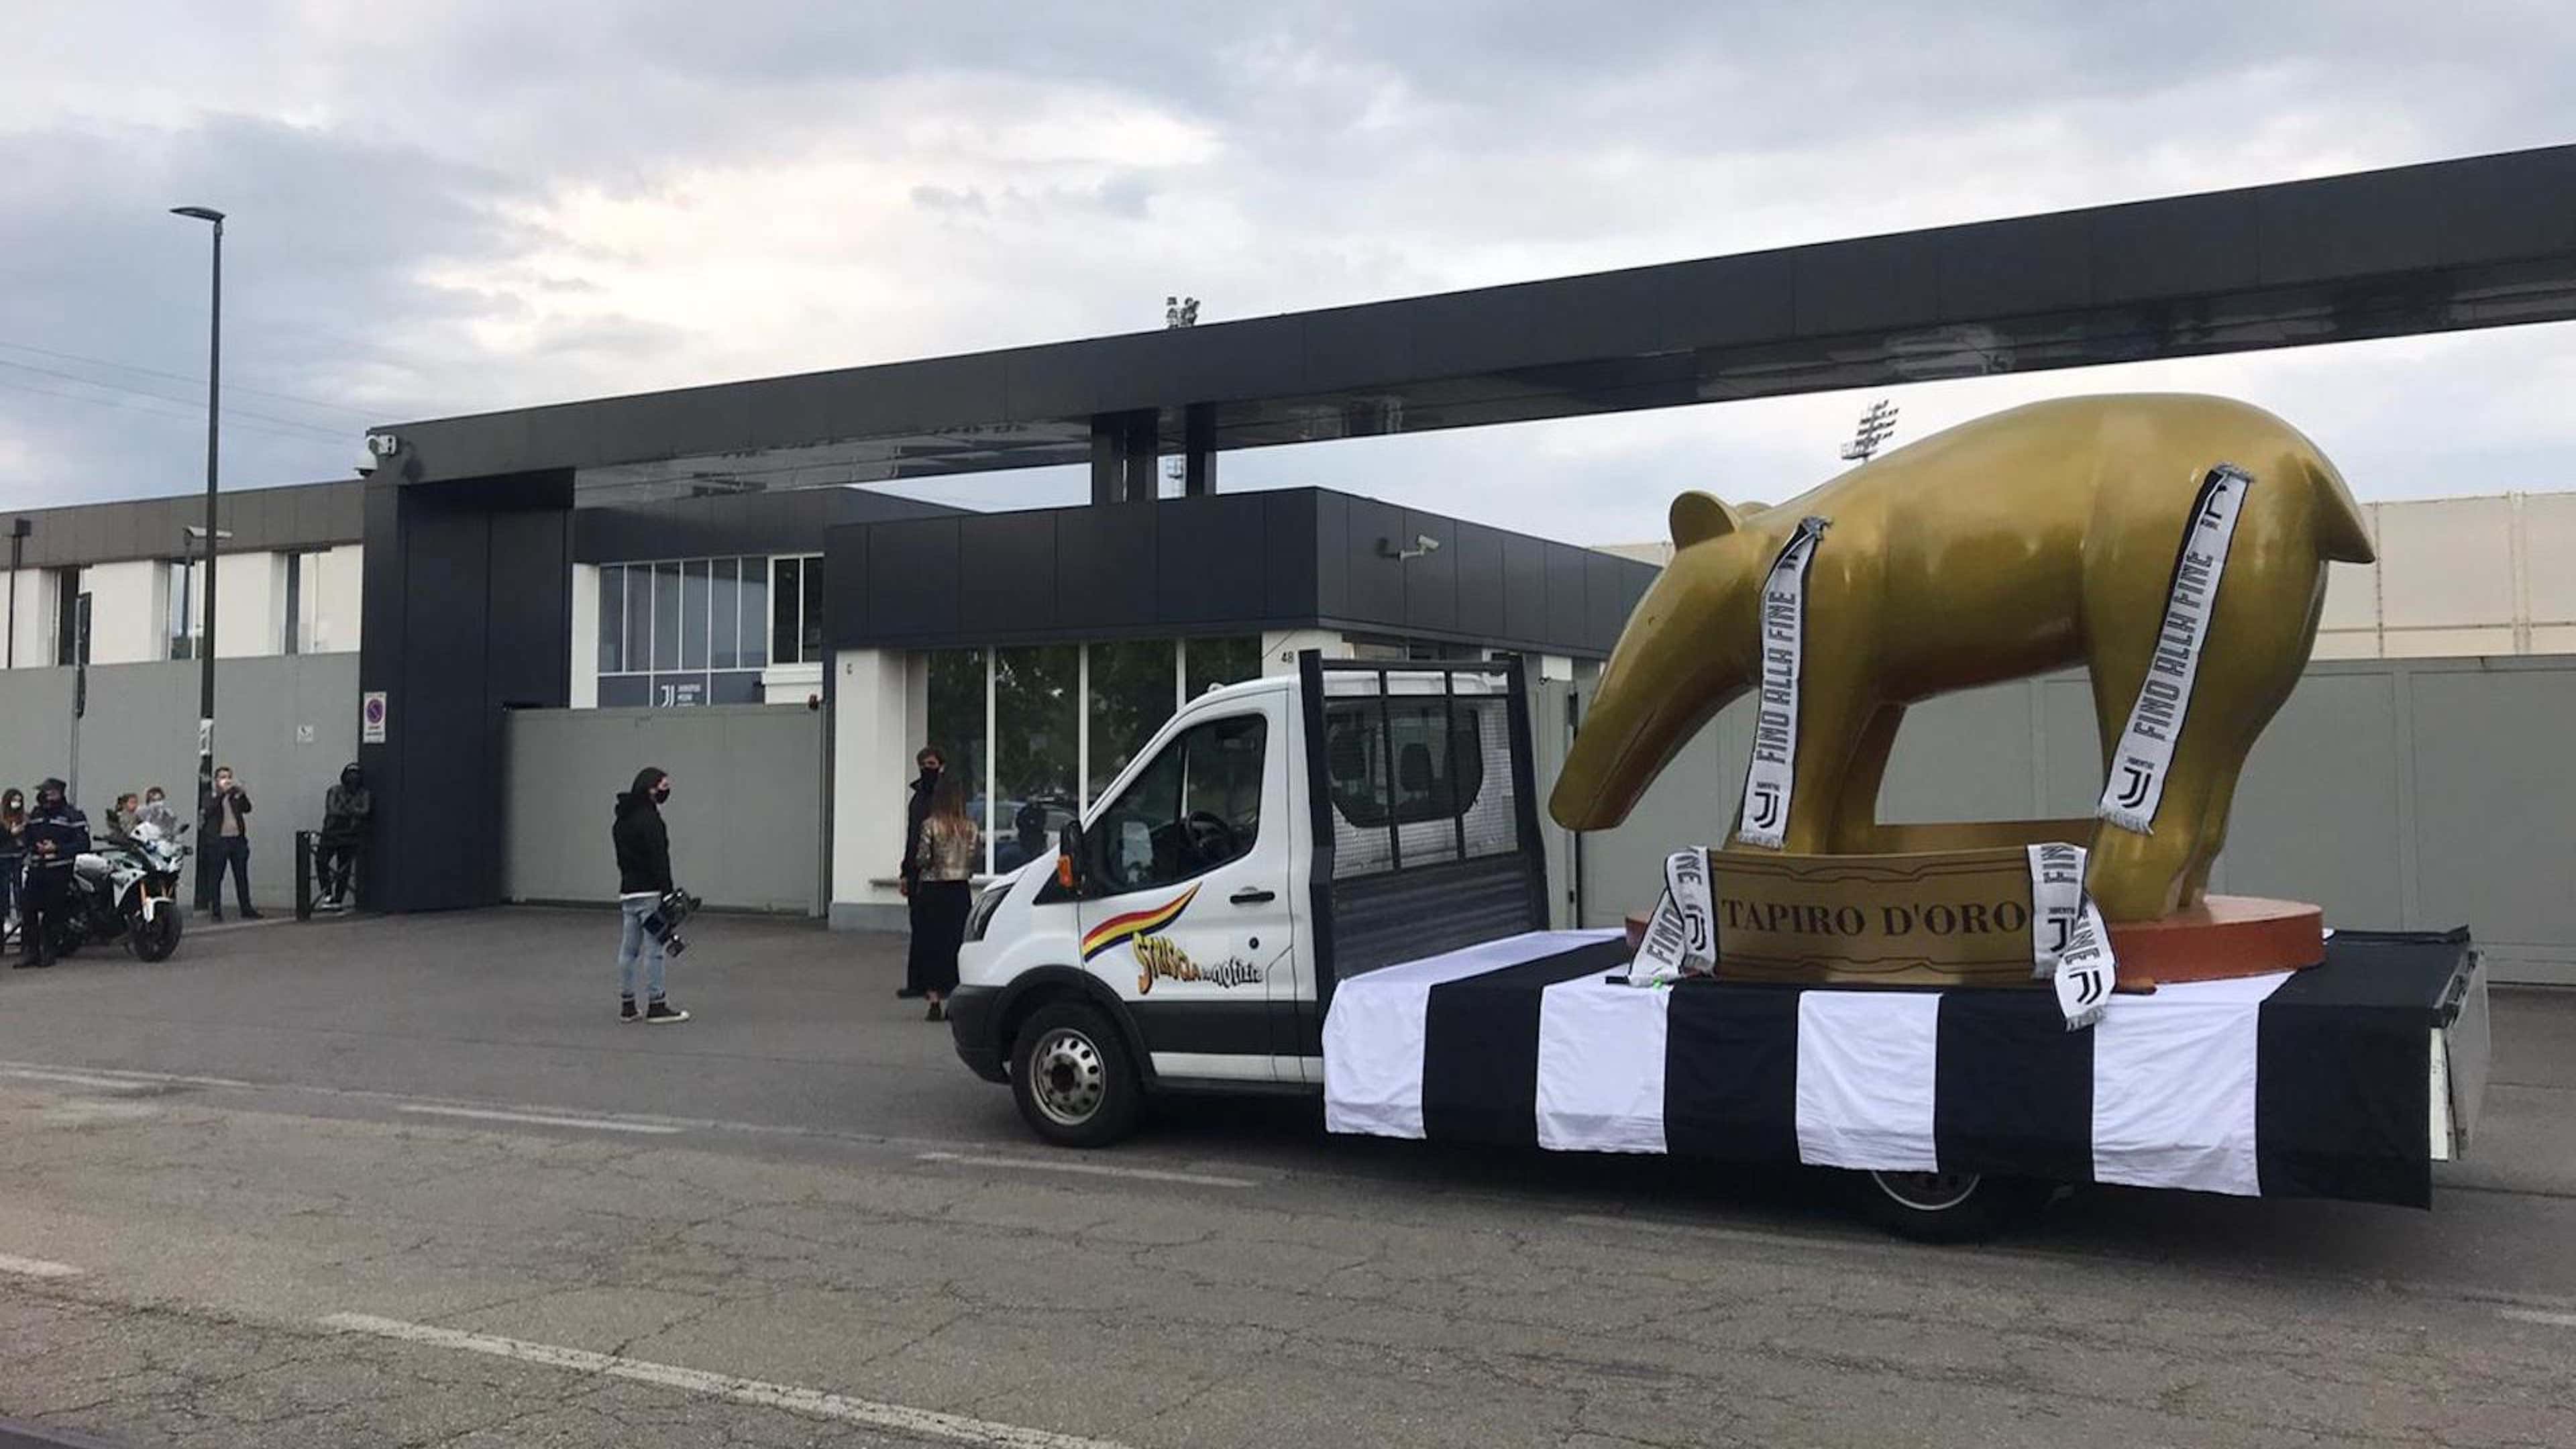 Flop Superlega: Tapiro d'Oro gigante davanti allo Juventus Stadium